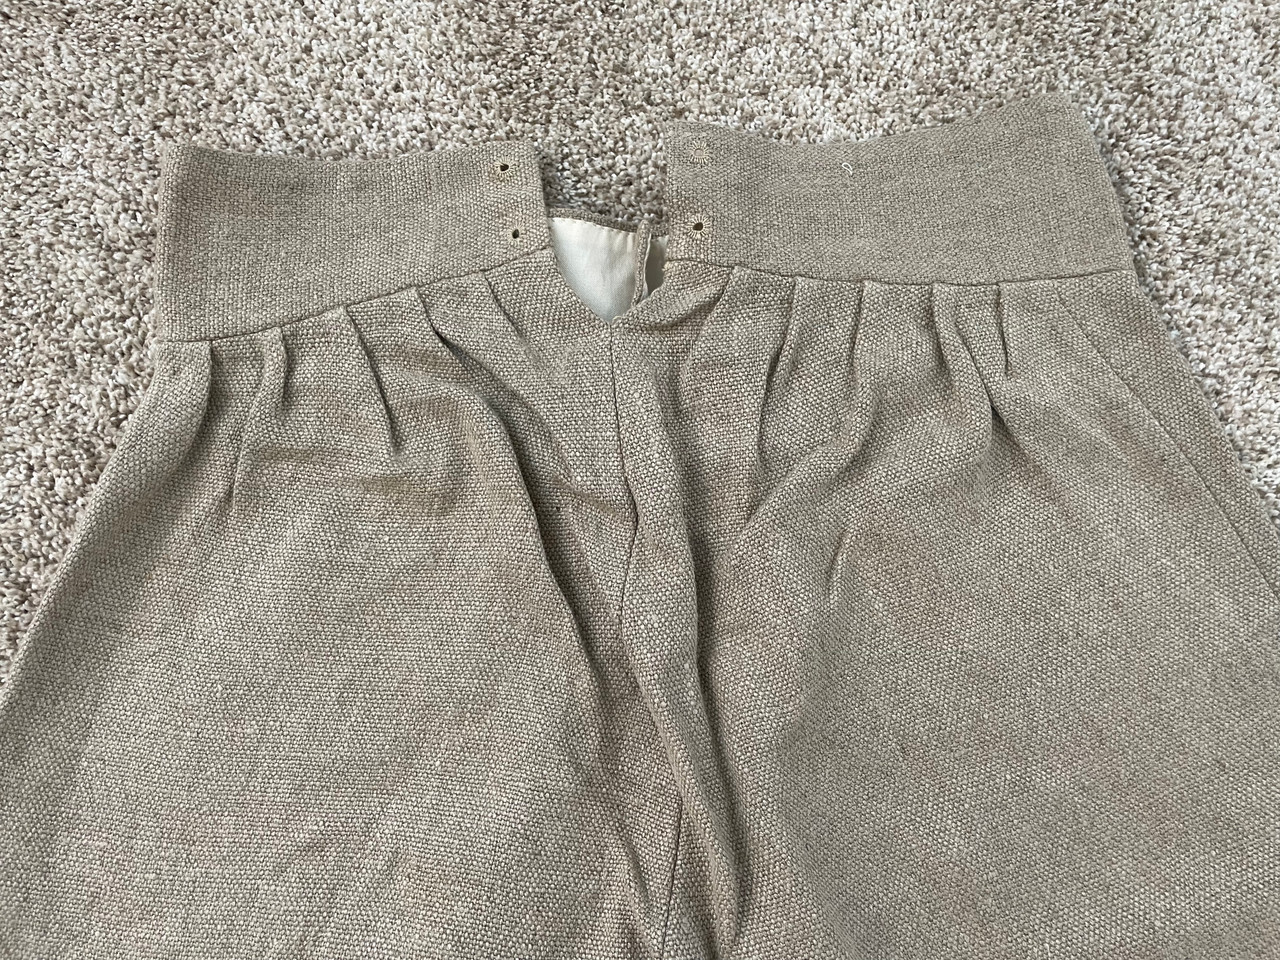 Excelsior Line 18th Century Men's Linen Trousers - South Union Mills